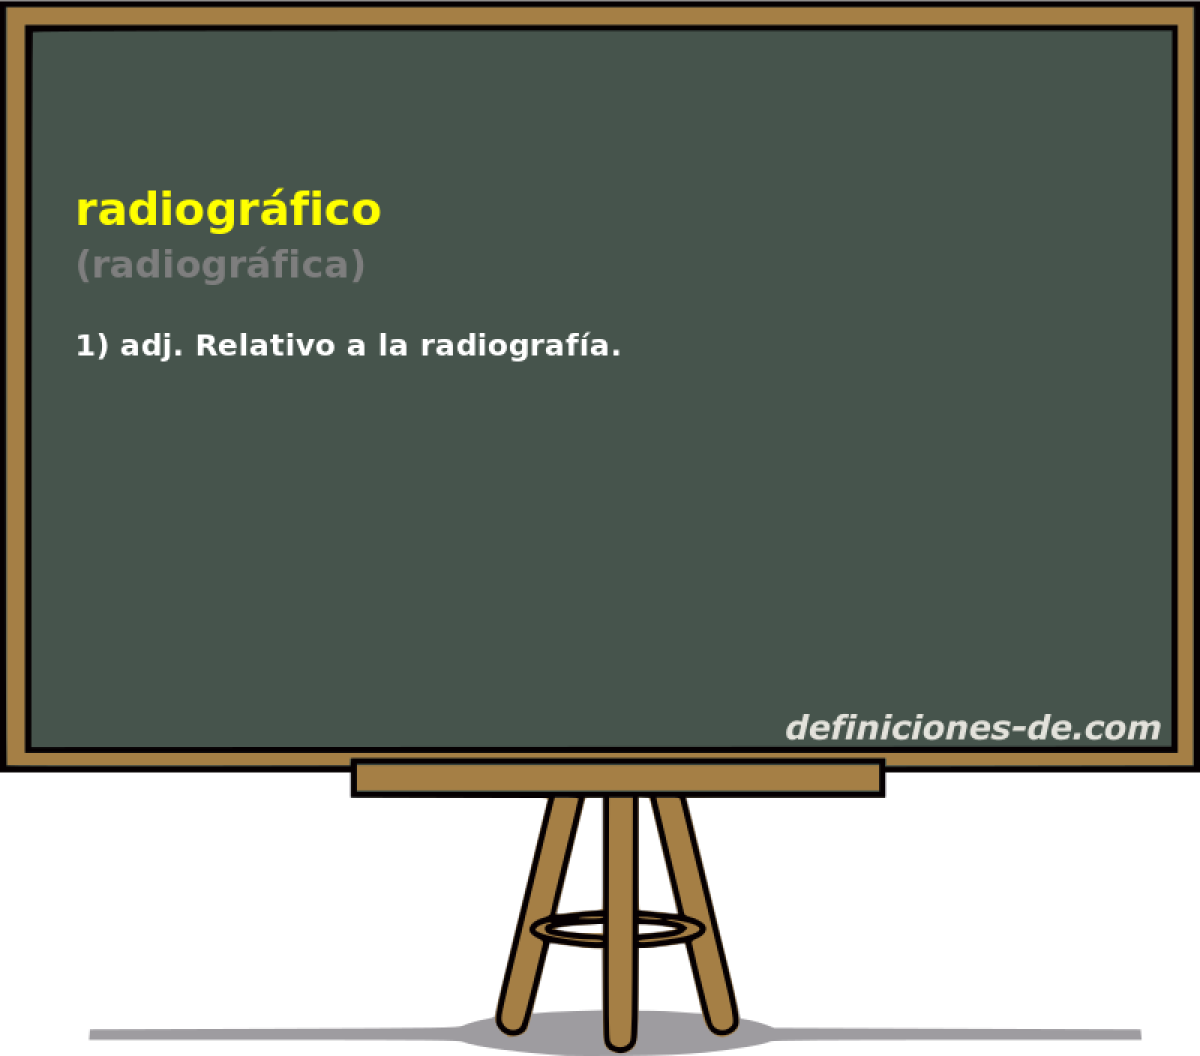 radiogrfico (radiogrfica)